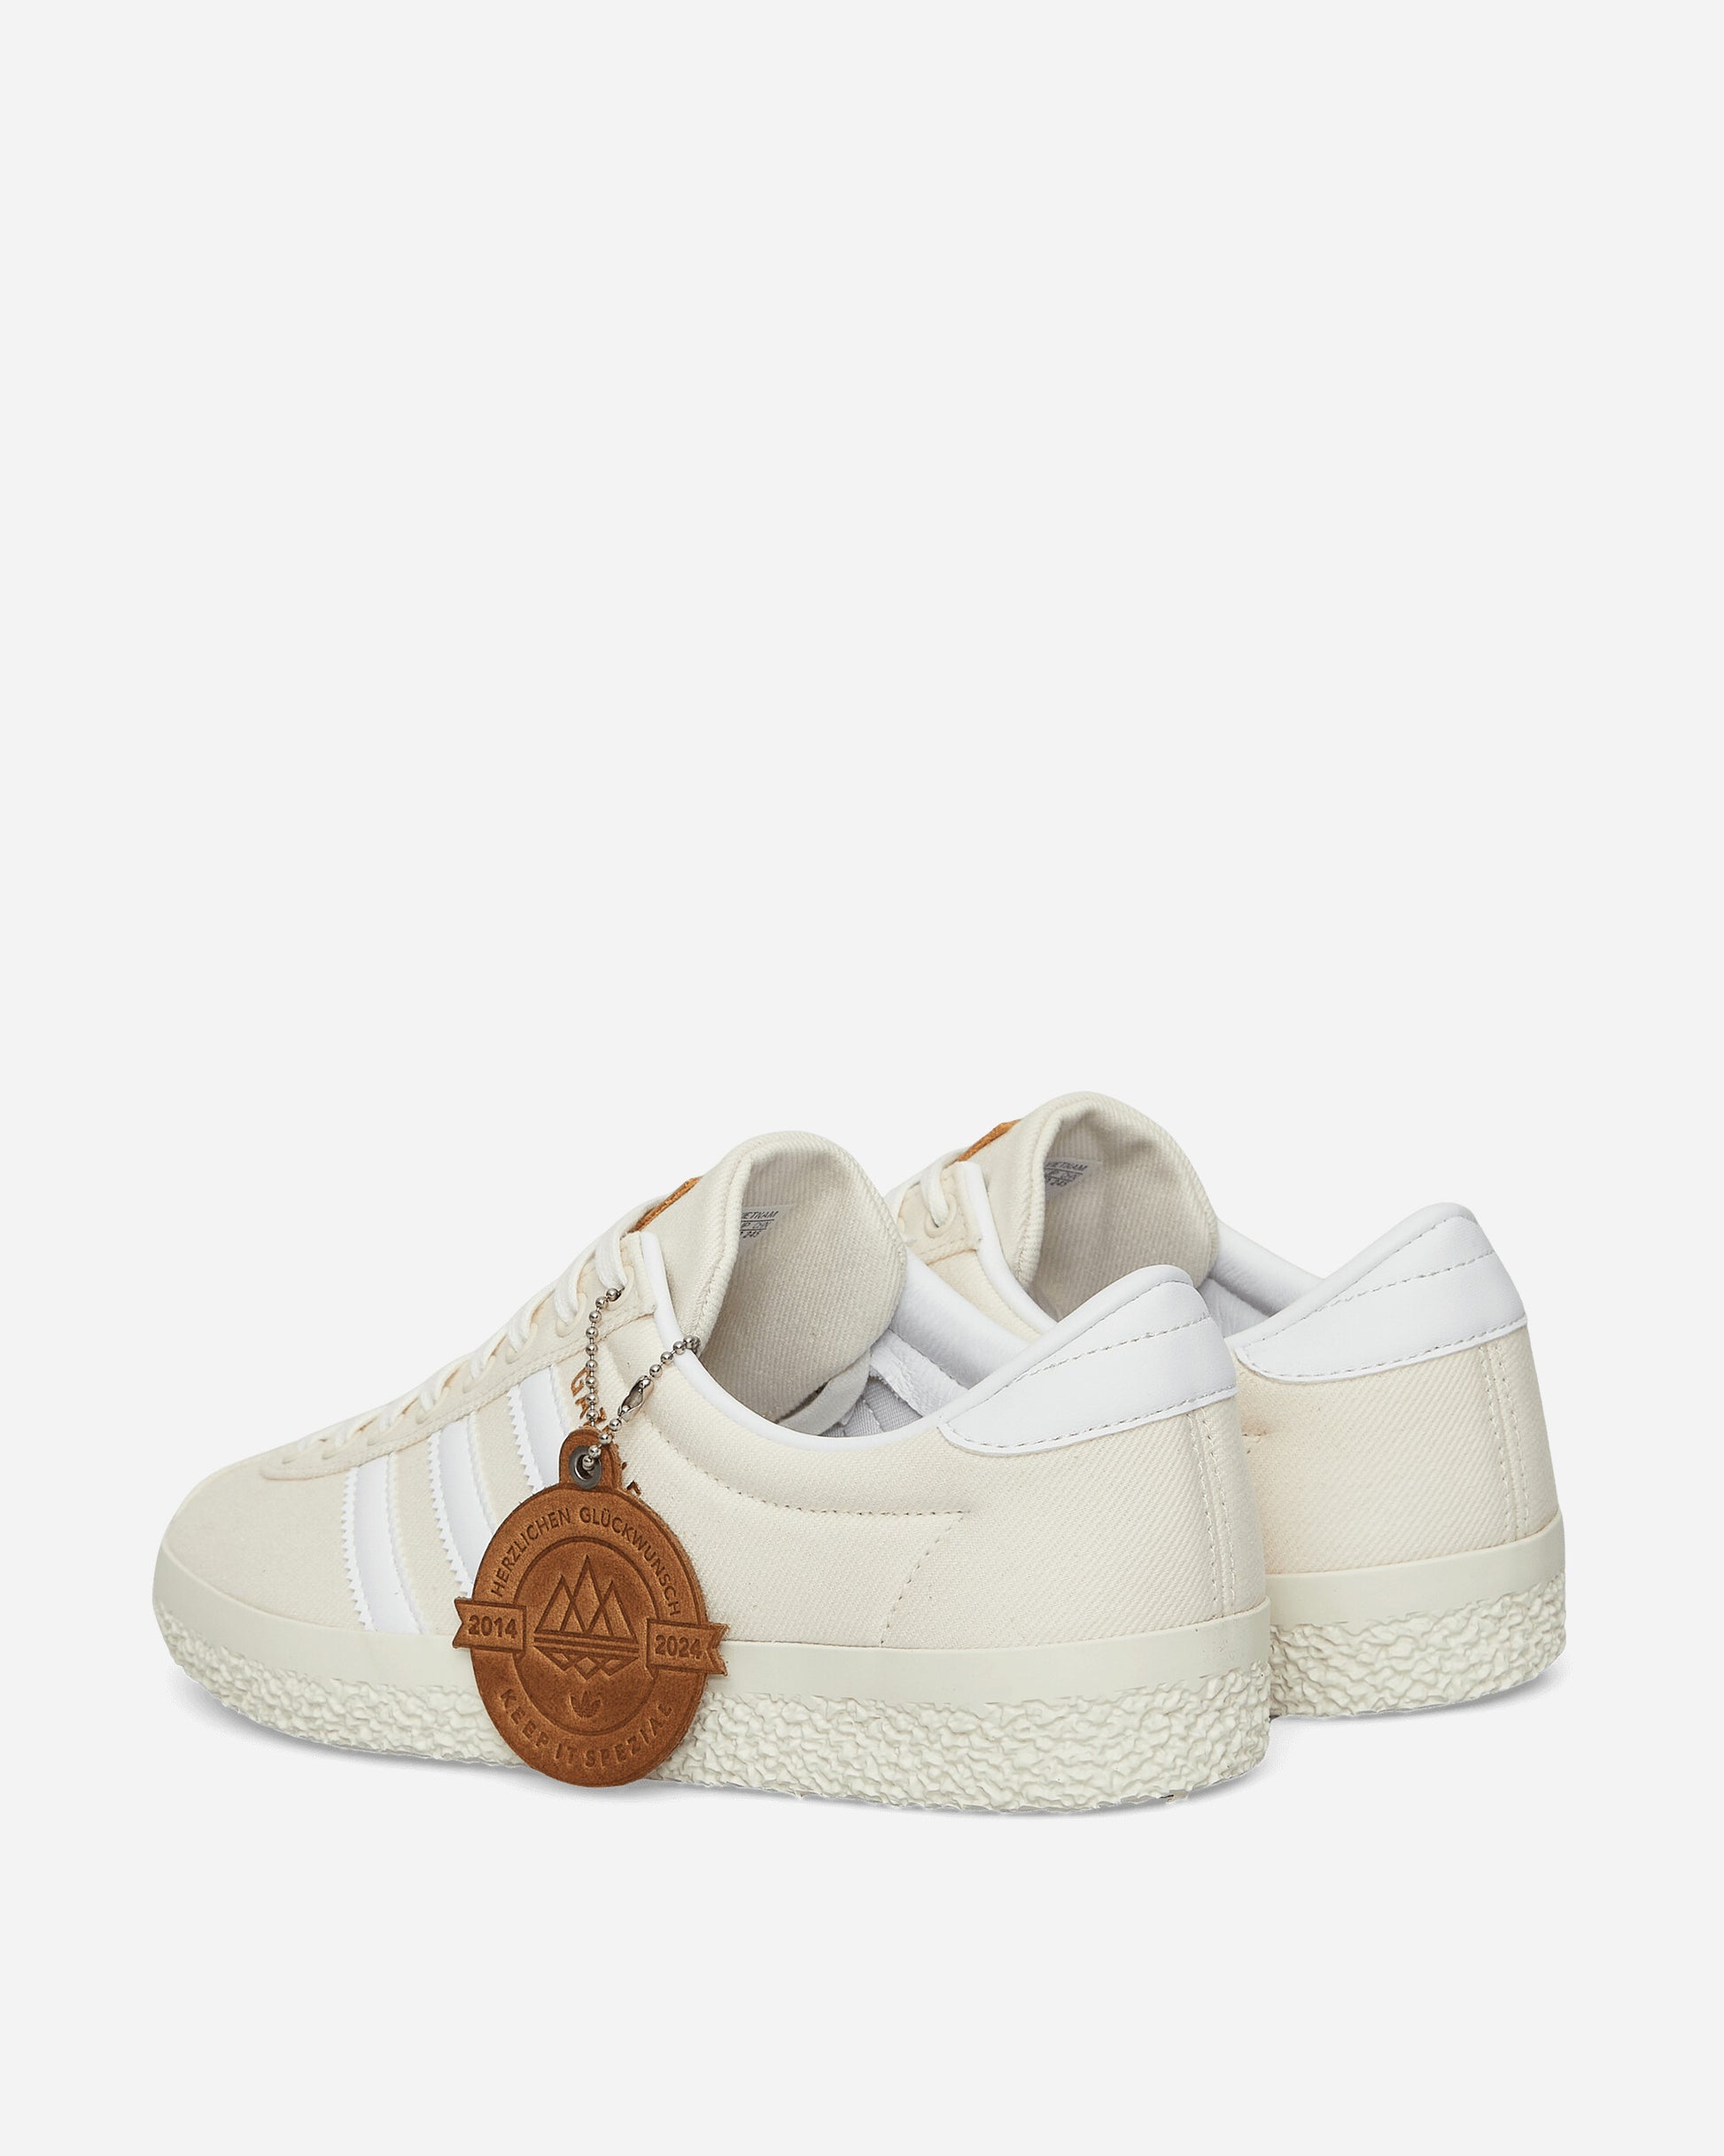 adidas Gazelle Spzl Chalk White/Ftwr White Sneakers Low IG8940 001